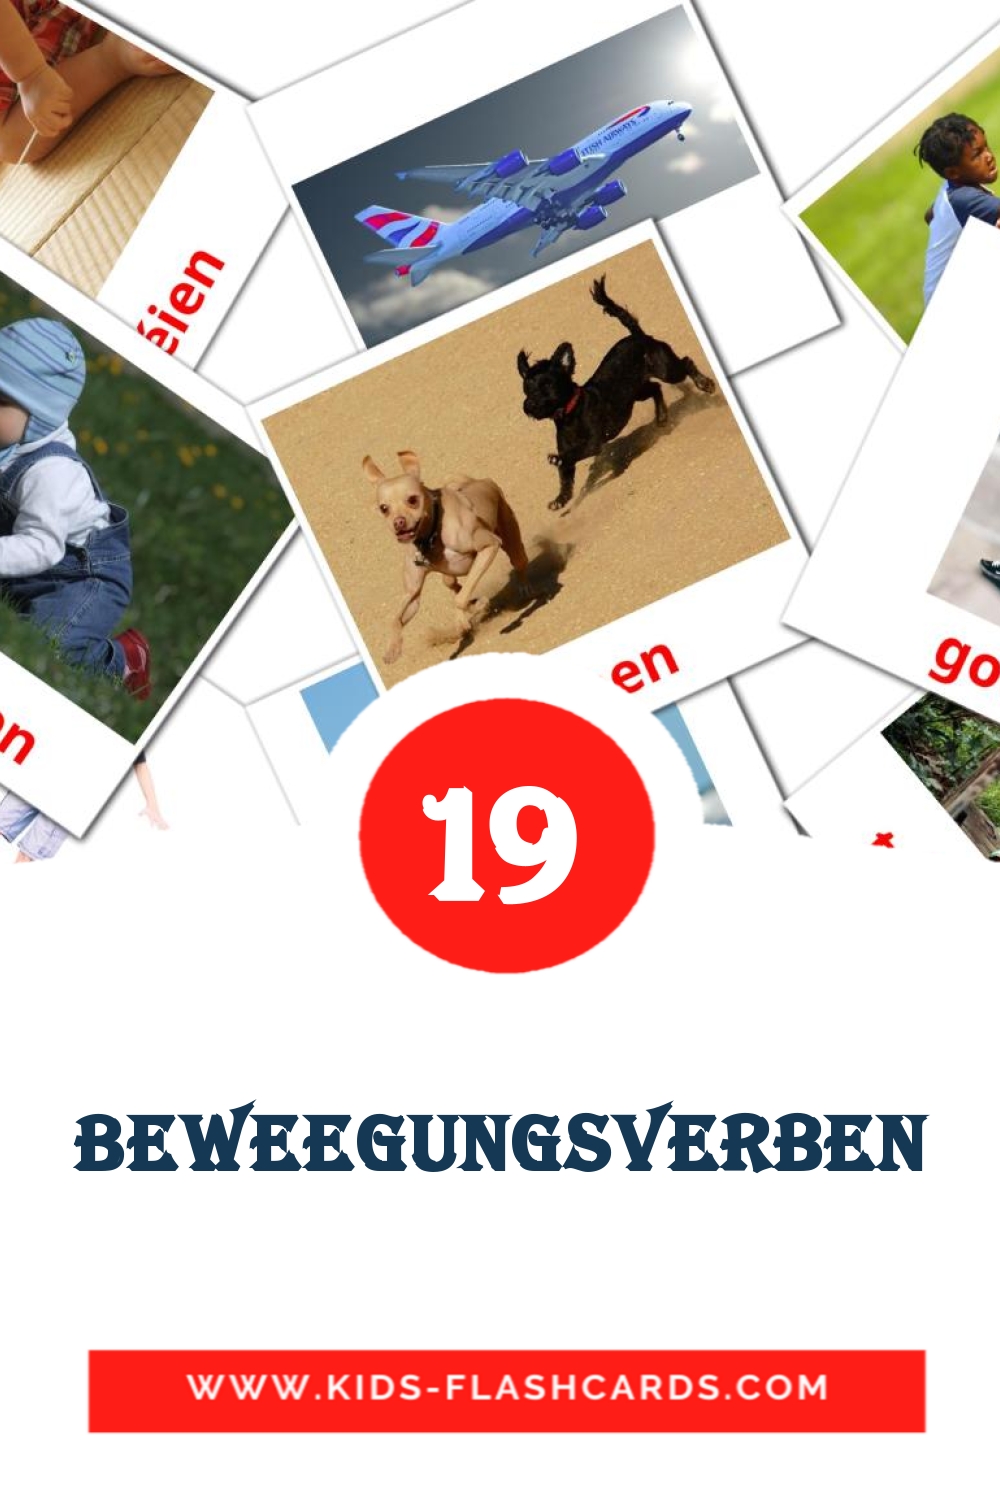 19 Beweegungsverben Bildkarten für den Kindergarten auf luxemburgisch